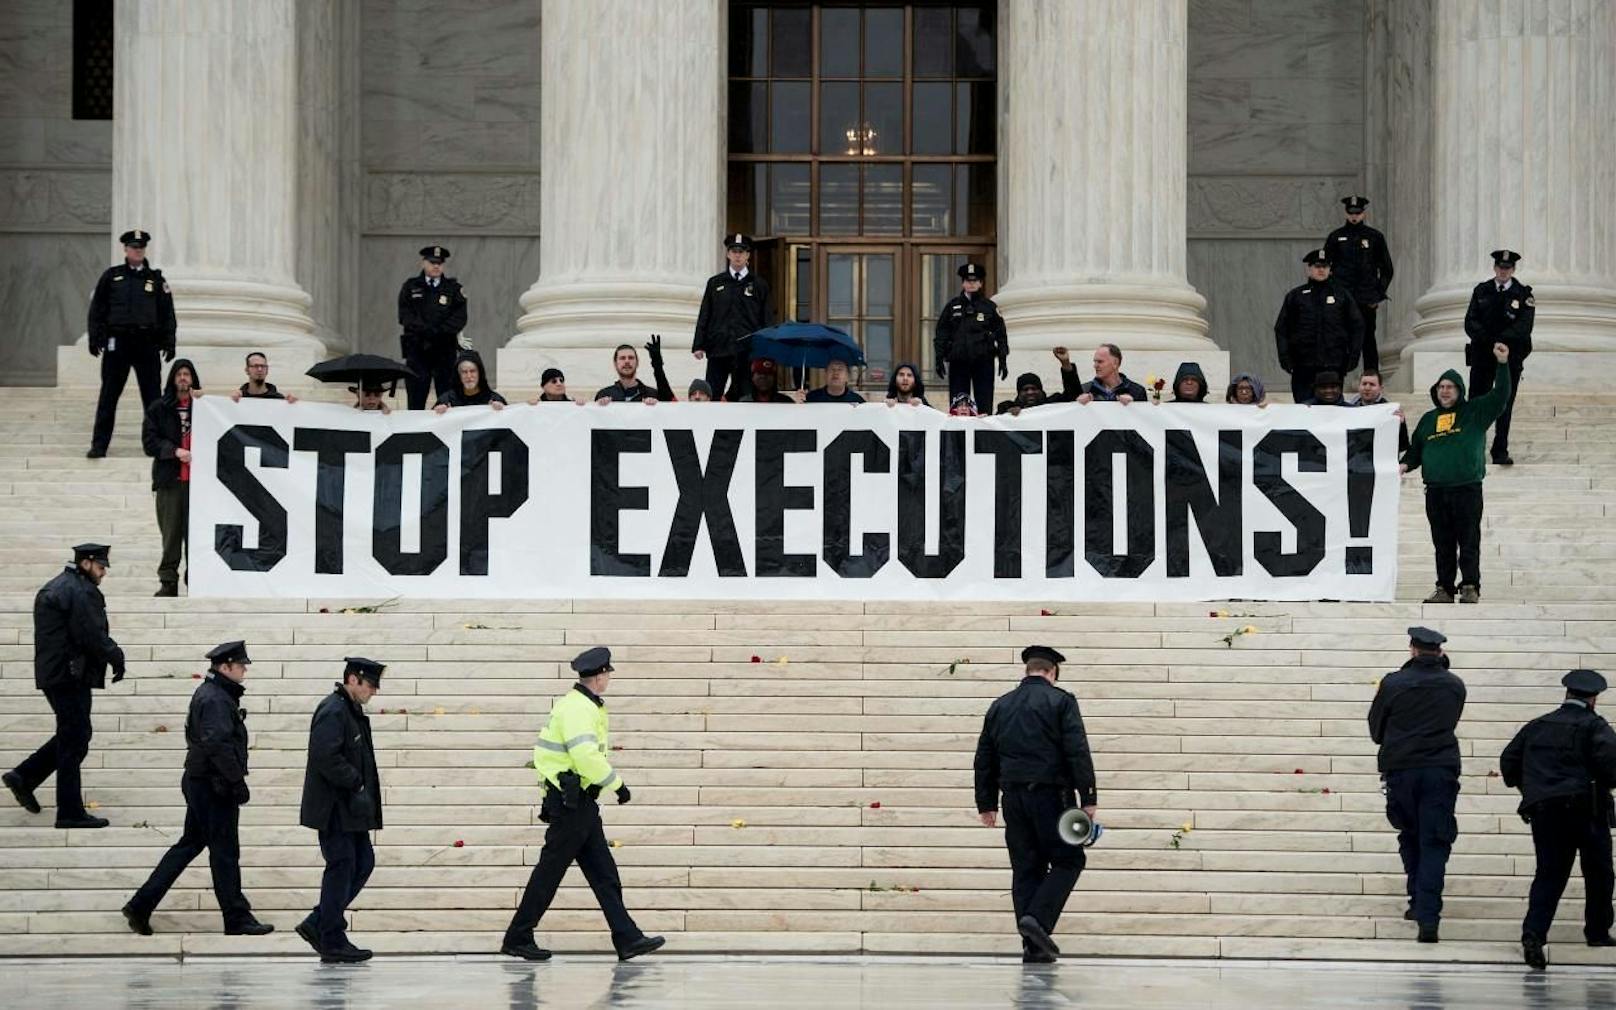 Aktivisten protestieren gegen die Todesstrafe vor dem Obersten Gerichtshof der USA in Washington D.C. Archivbild, 2017.